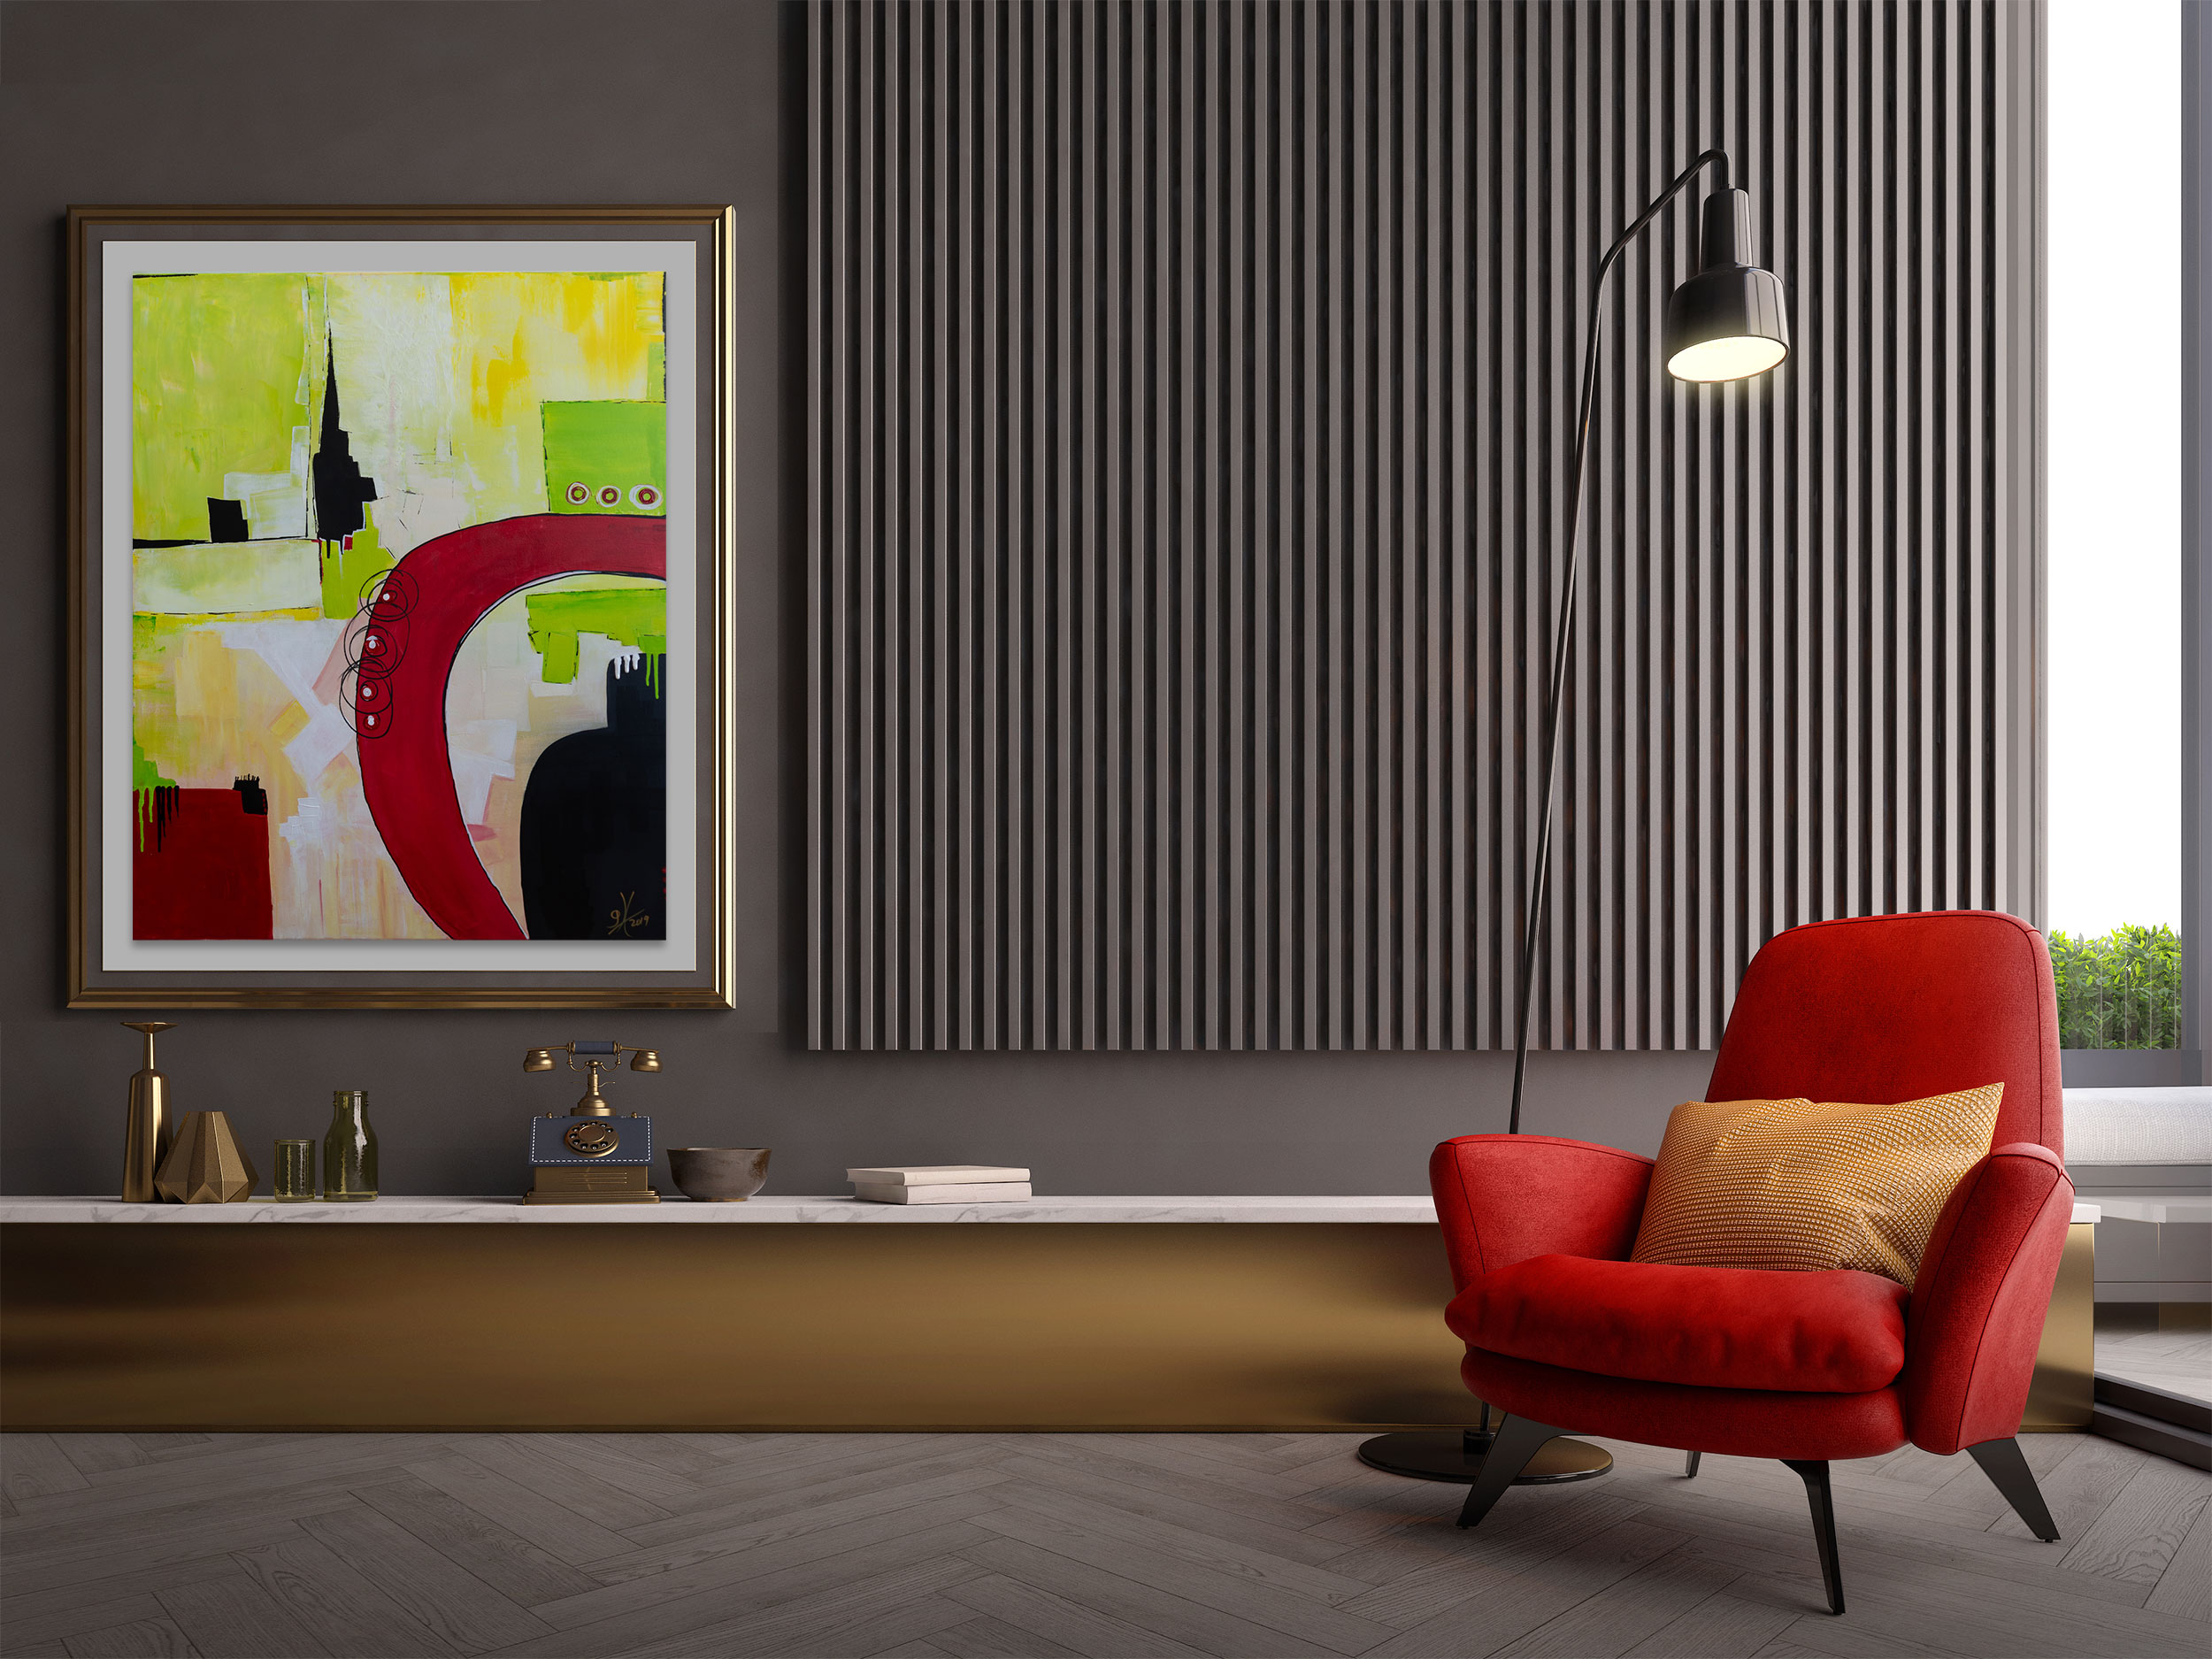 Dies faszinierende abstrakte Gemälde strahlt in der Hauptfarbe Gelb-Grün. Es präsentiert eine dynamische Komposition aus verschiedenen trendigen Farbfeldern, die in Grün, Gelb-Orange, Schwarz und Weiß gehalten sind und abstrakte geometrische Formen bilden. Ein markanter roter Bogen, der von dünnen, schwarzen Linien umrandet wird, zieht sofort die Aufmerksamkeit auf sich und verleiht dem Bild eine starke visuelle Präsenz. Die Kombination aus lebendigen Farben, harmonischen Kontrasten und einer kraftvollen Komposition macht dieses Gemälde zu einem wahren Blickfang und einer Bereicherung für jeden Raum. Es wartet nur darauf, einen Käufer zu finden, der seine Schönheit und Ausdruckskraft zu schätzen weiß.